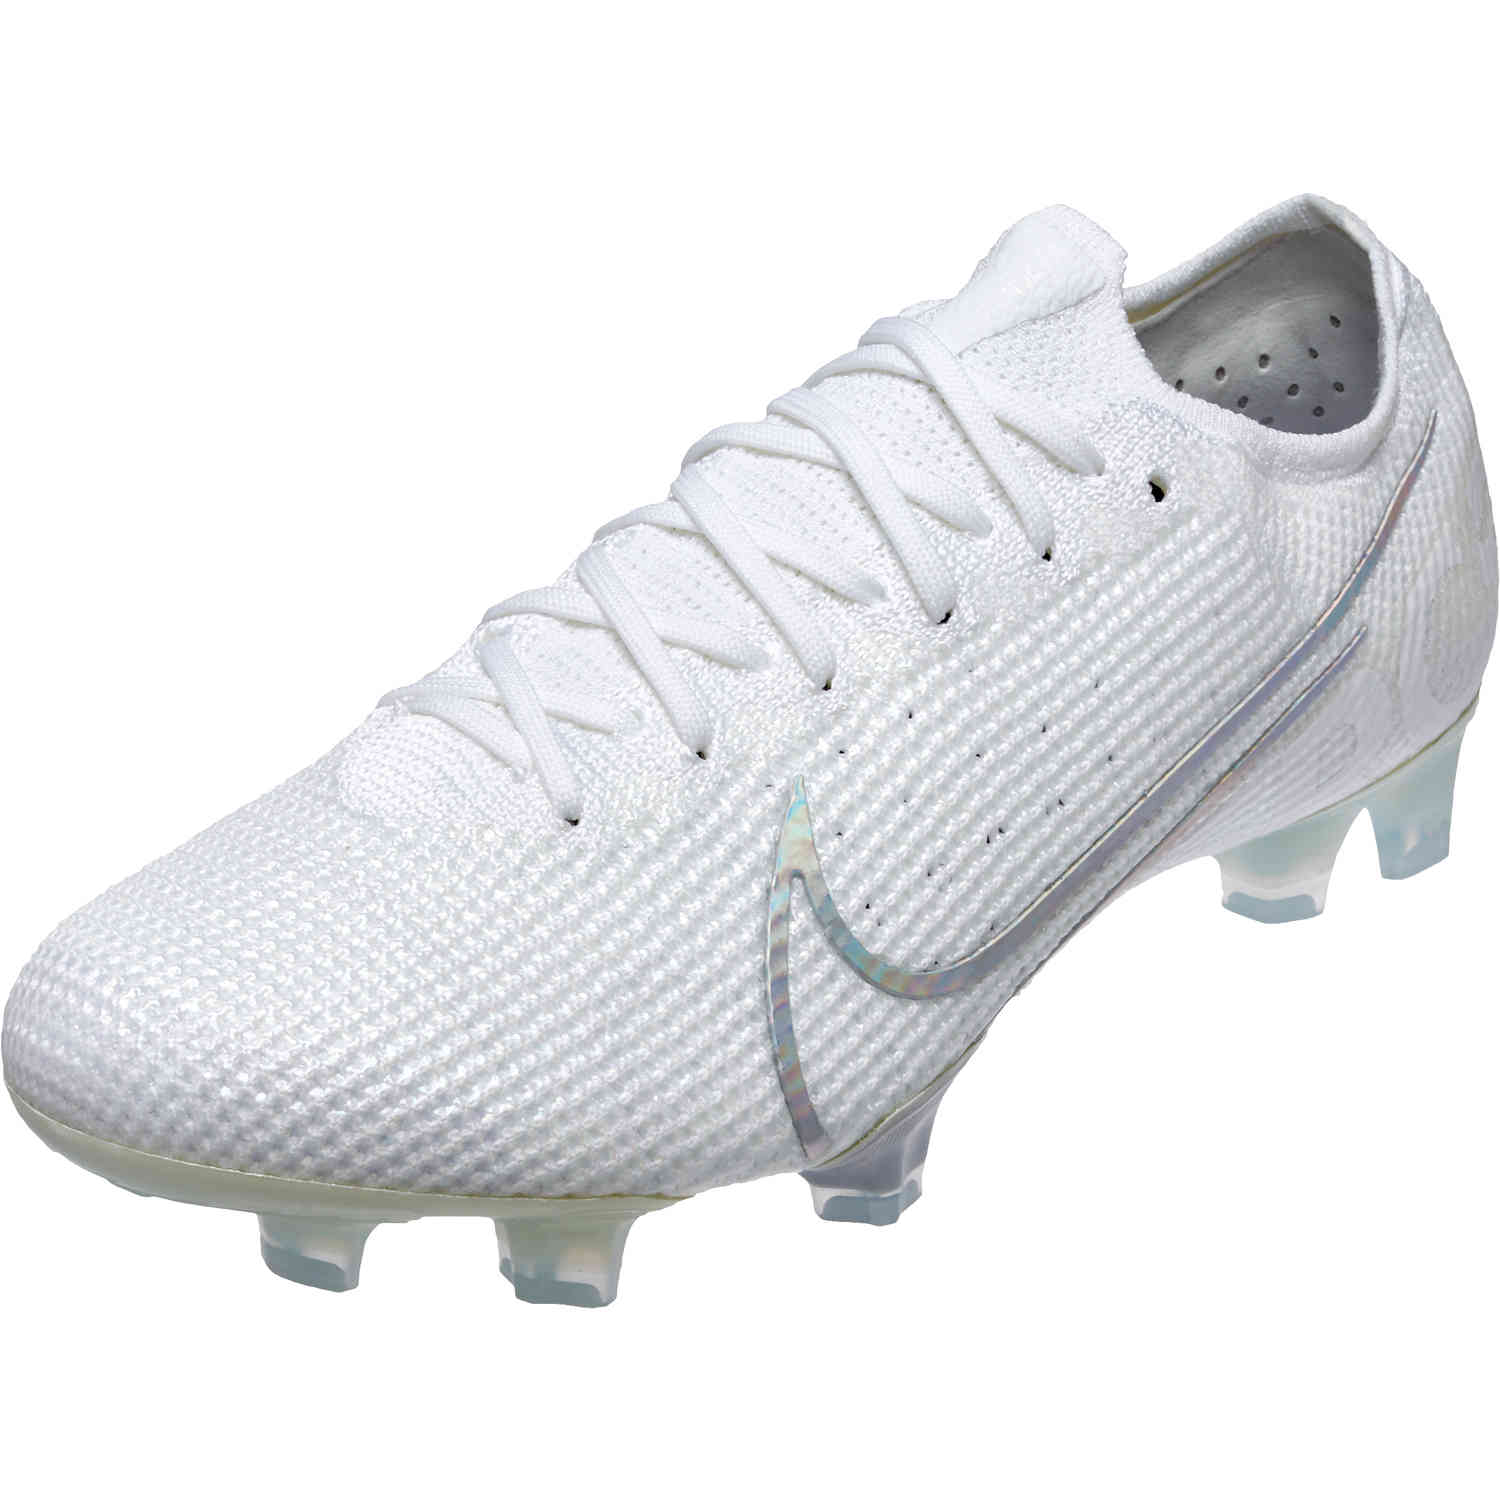 Mercurial Football Boots. Nike.com SK